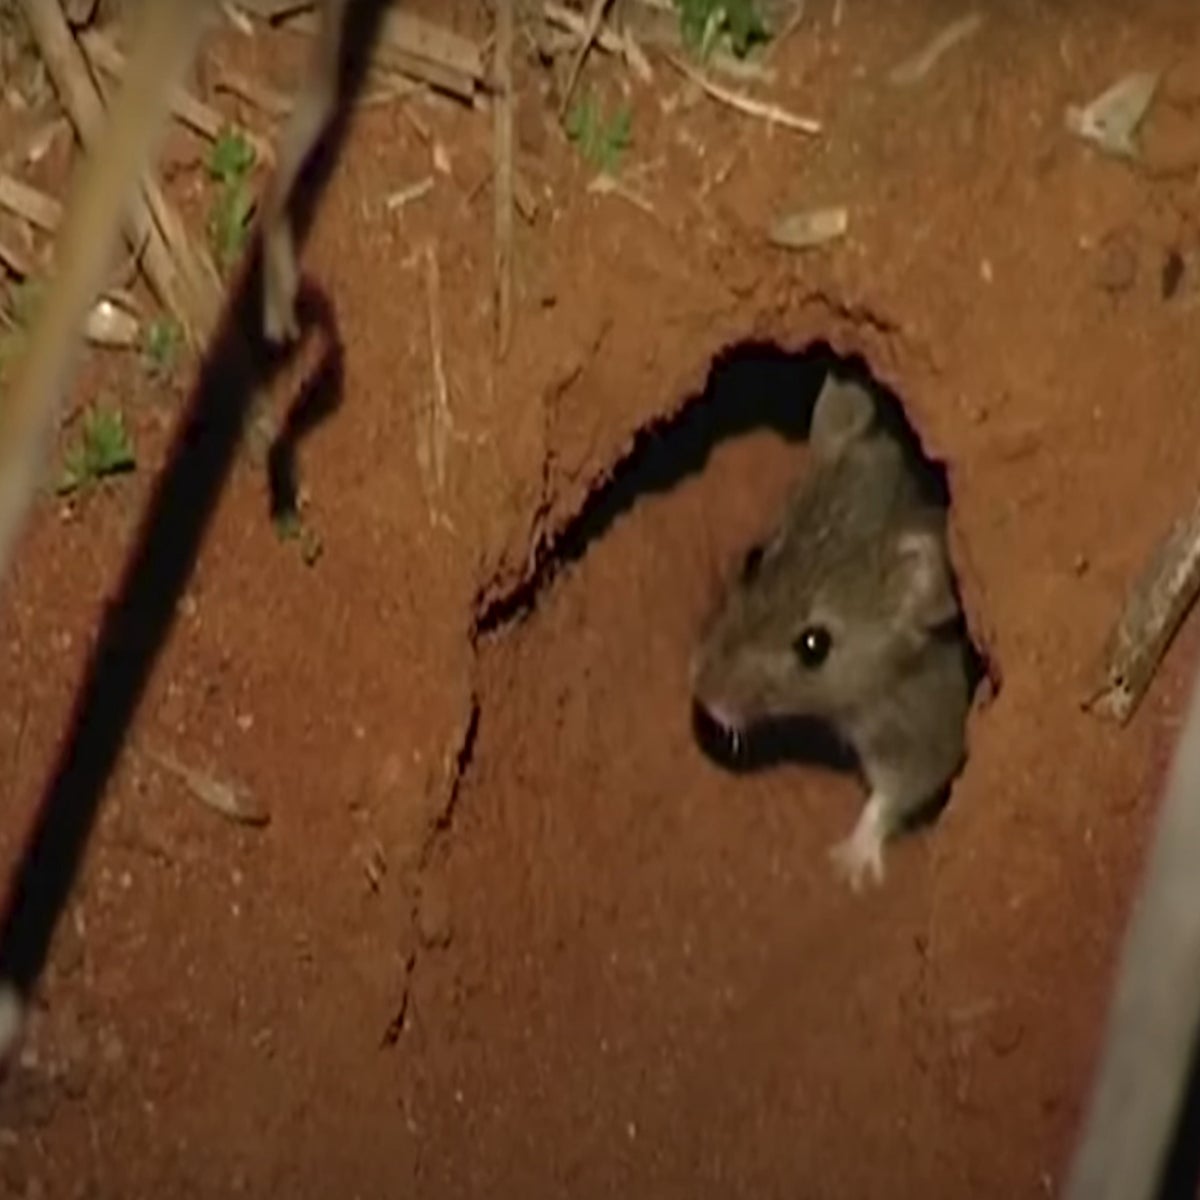 Infestation de rats de Karumba : au moins 1 000 rats morts s'échouent  chaque jour dans une ville australienne - Pacte pour le Climat